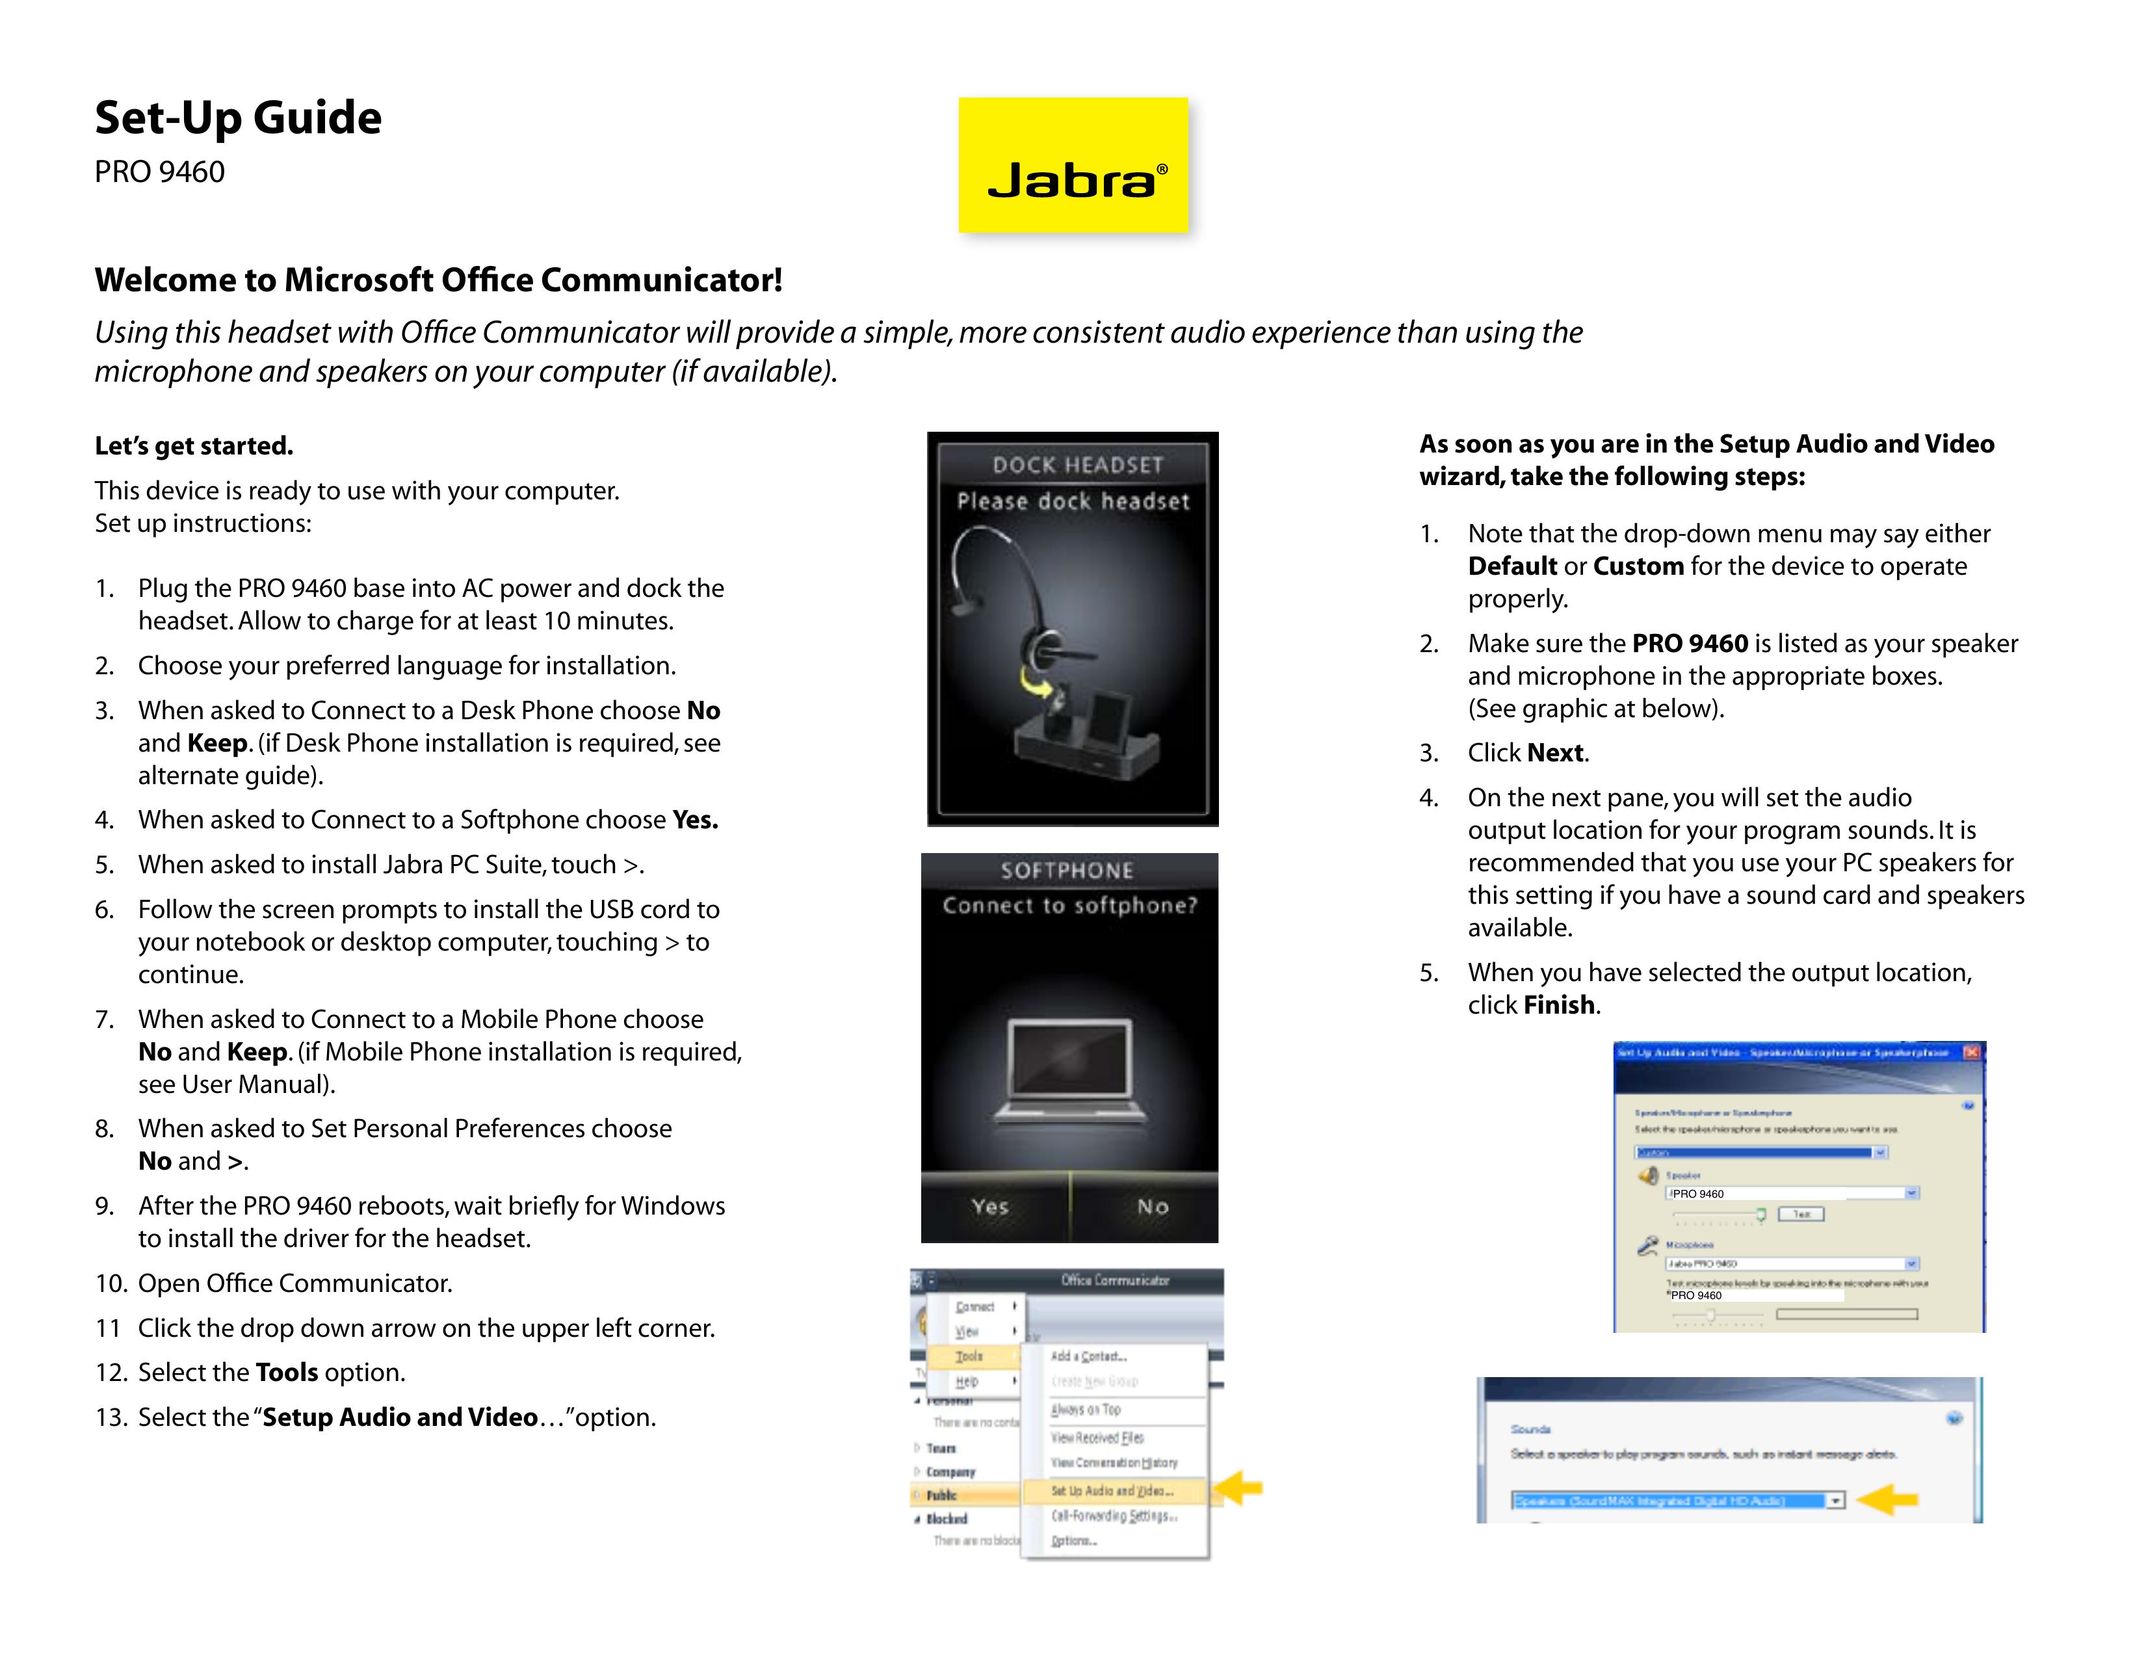 Jabra PR9460 Video Game Headset User Manual